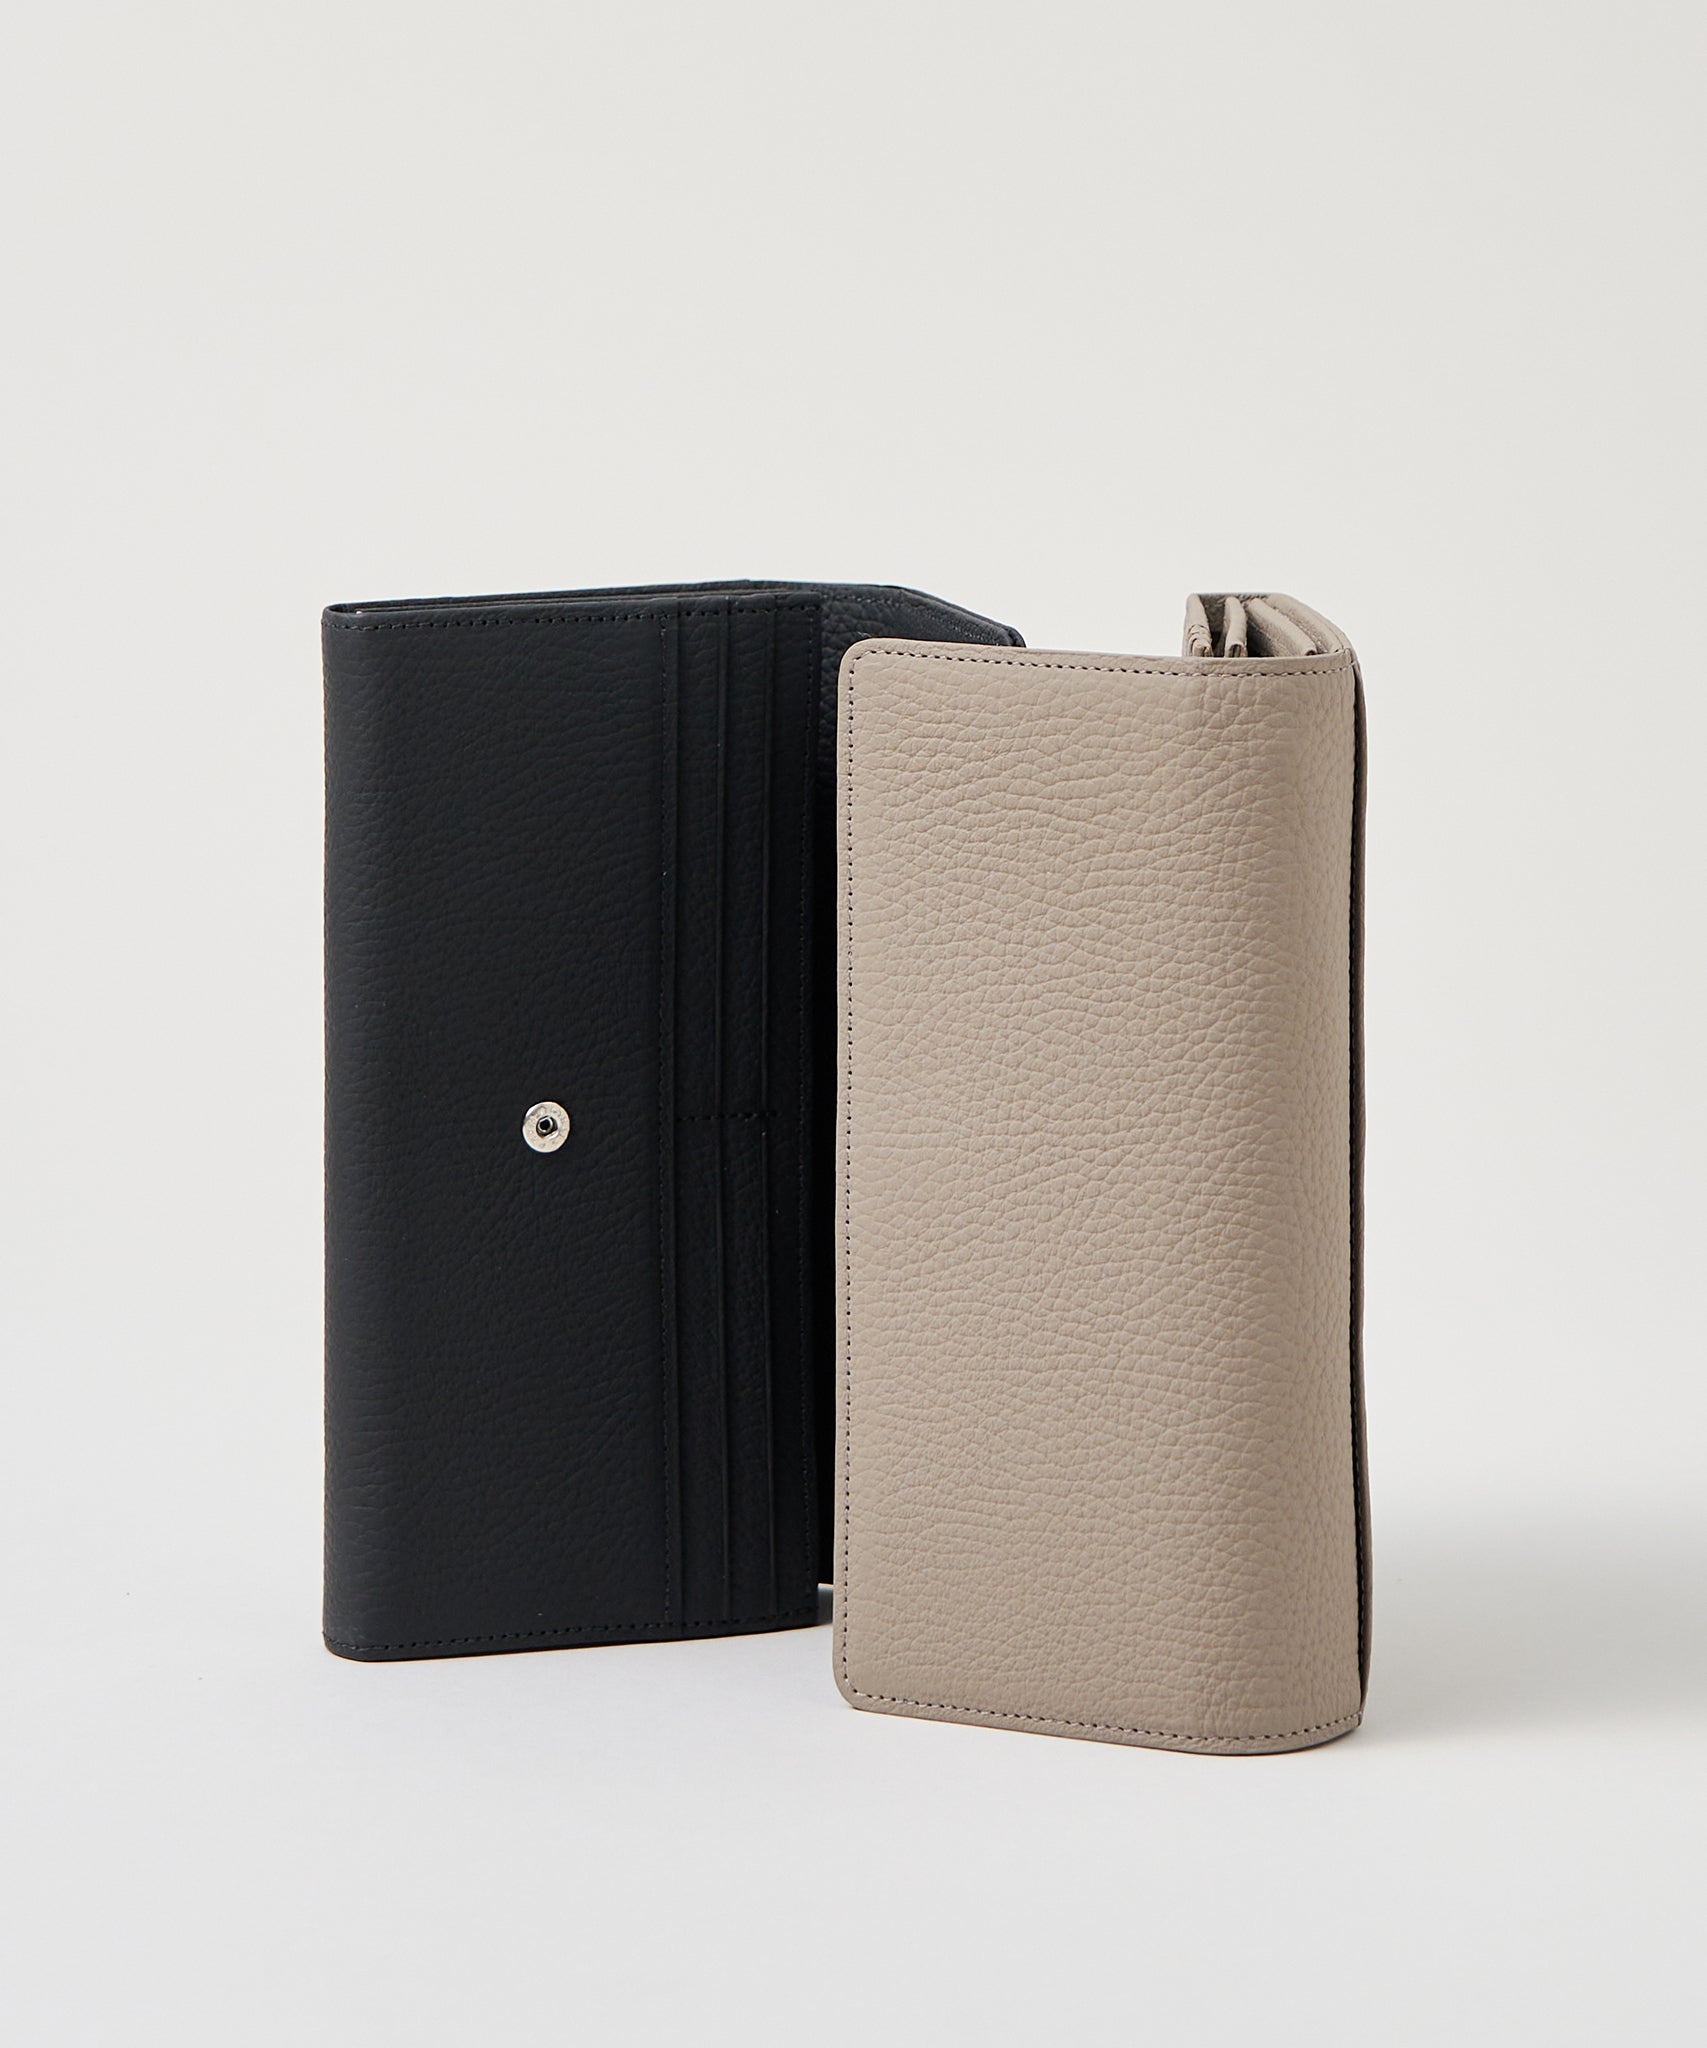 REN】《長財布》シンプルなデザインにマットな色味の革財布。